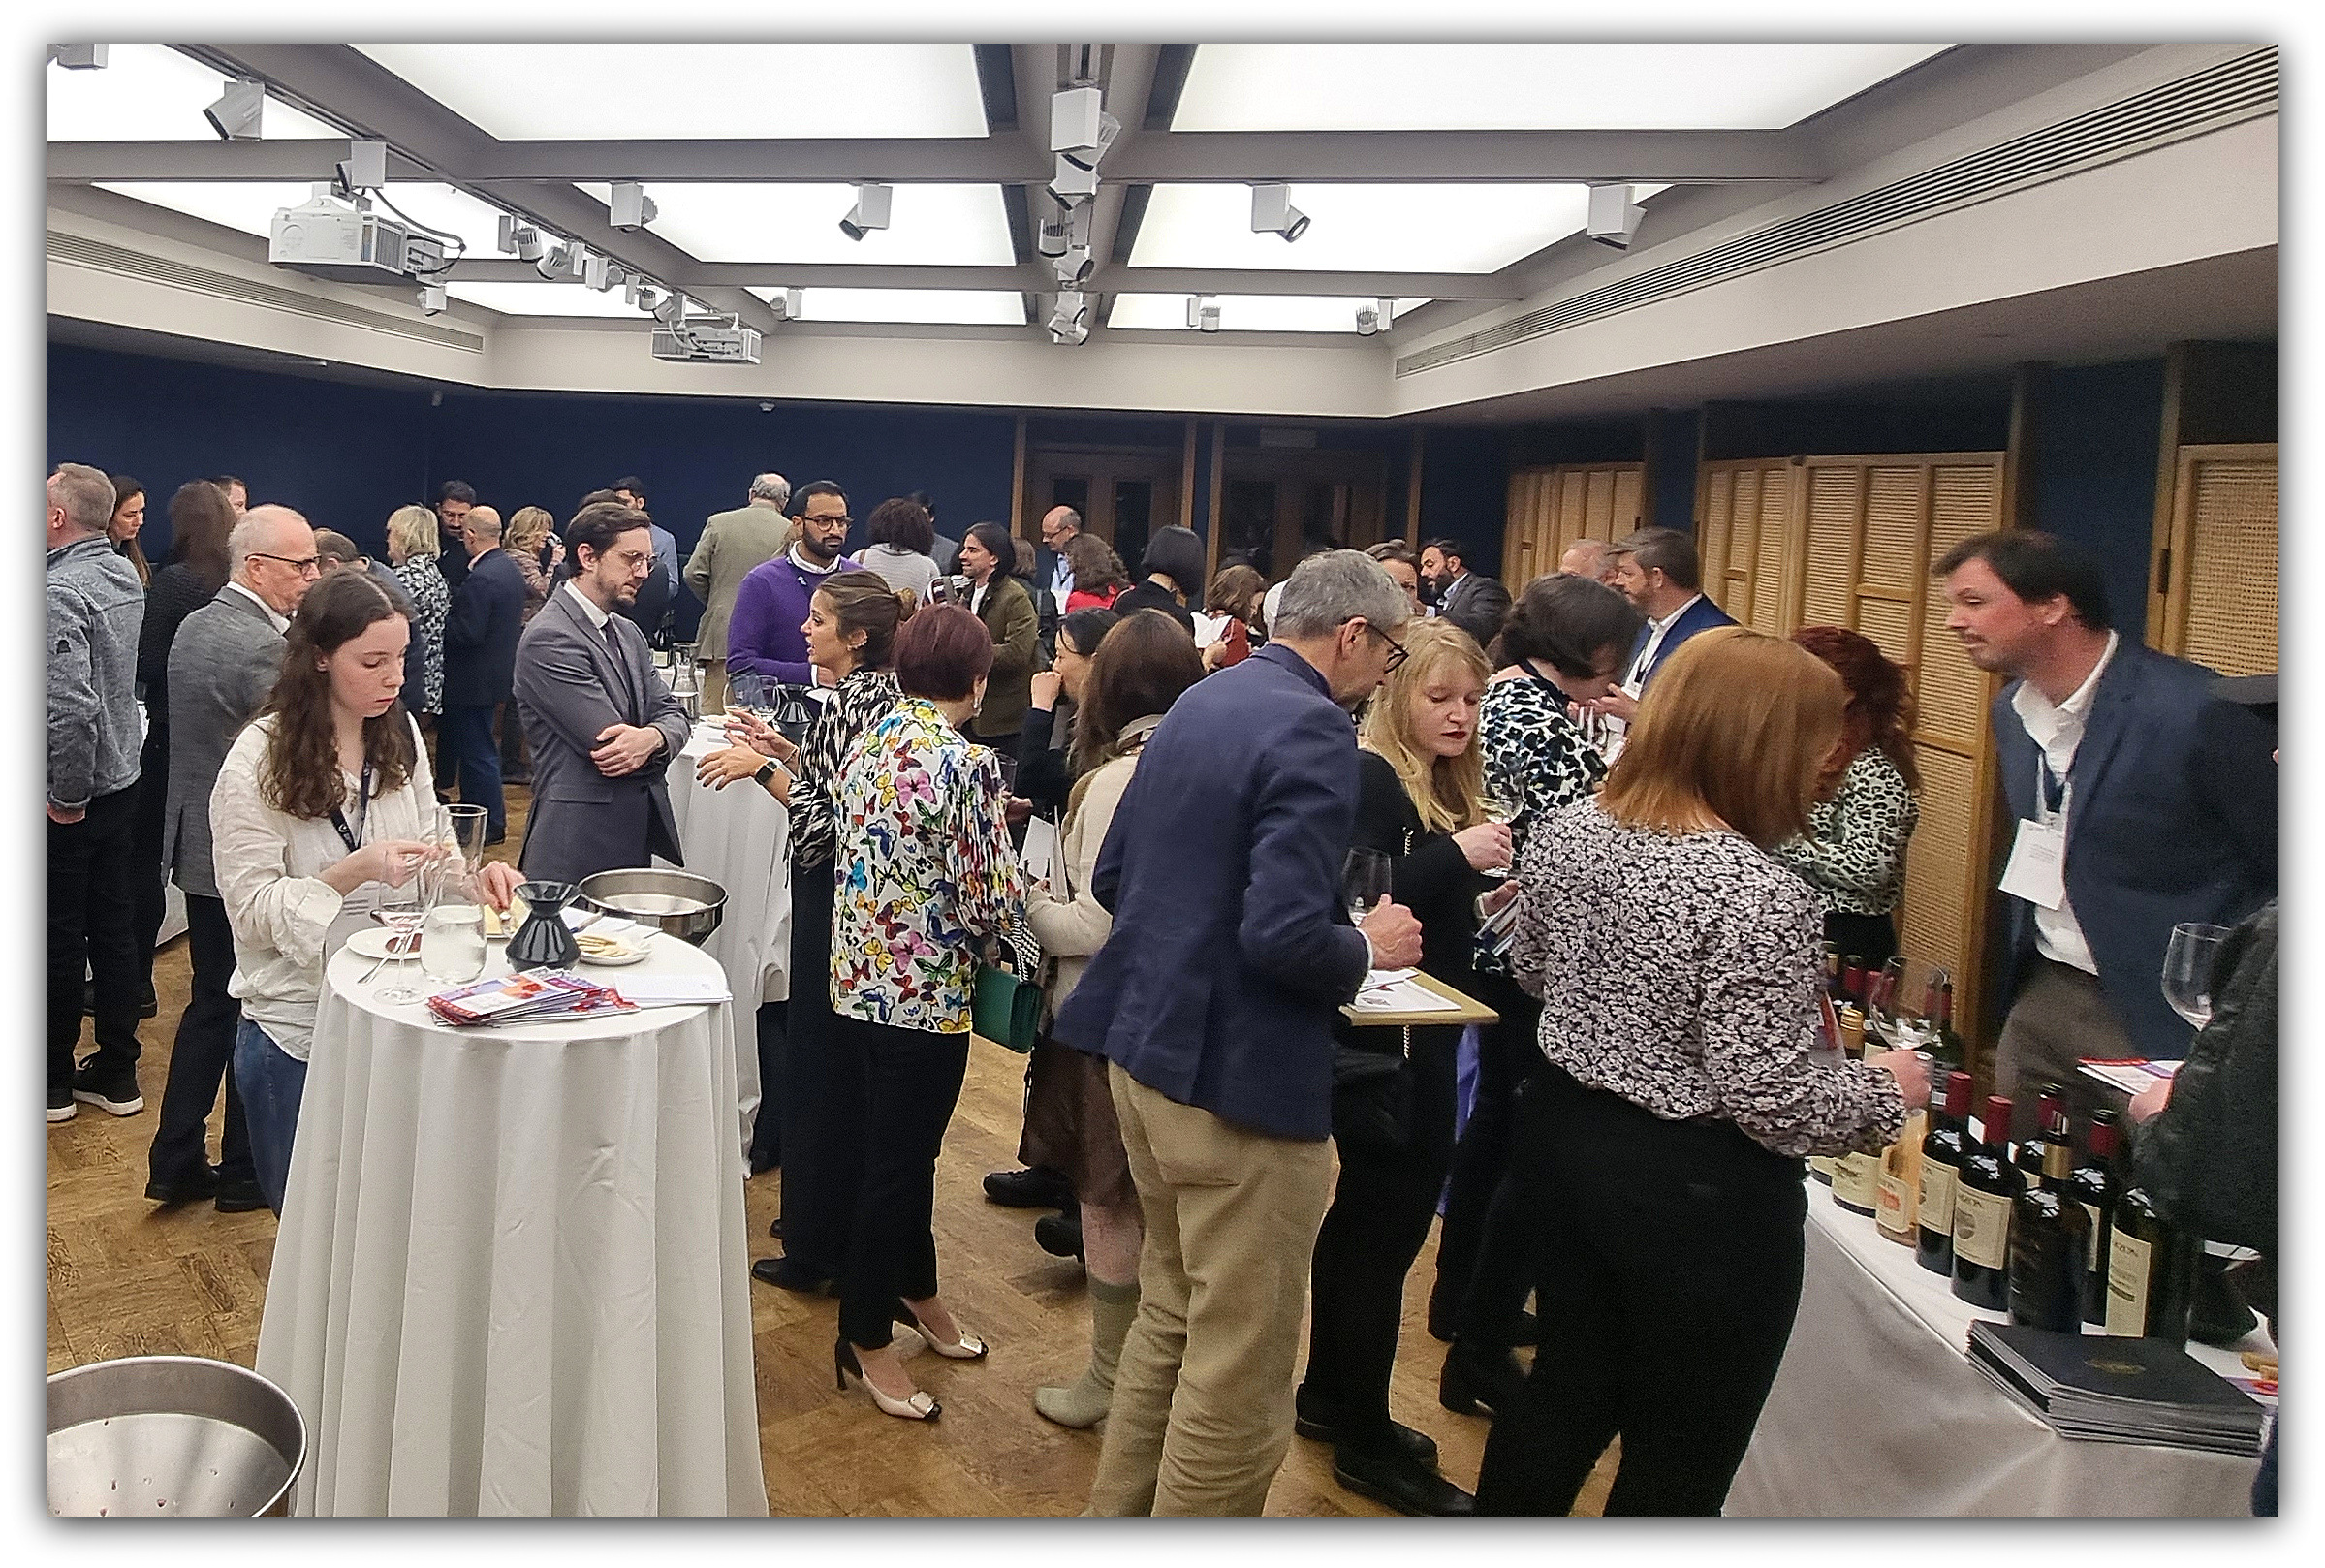 01 - Evento del Instituto Nacional de Vitivinicultura - Uruguay Wine in London.